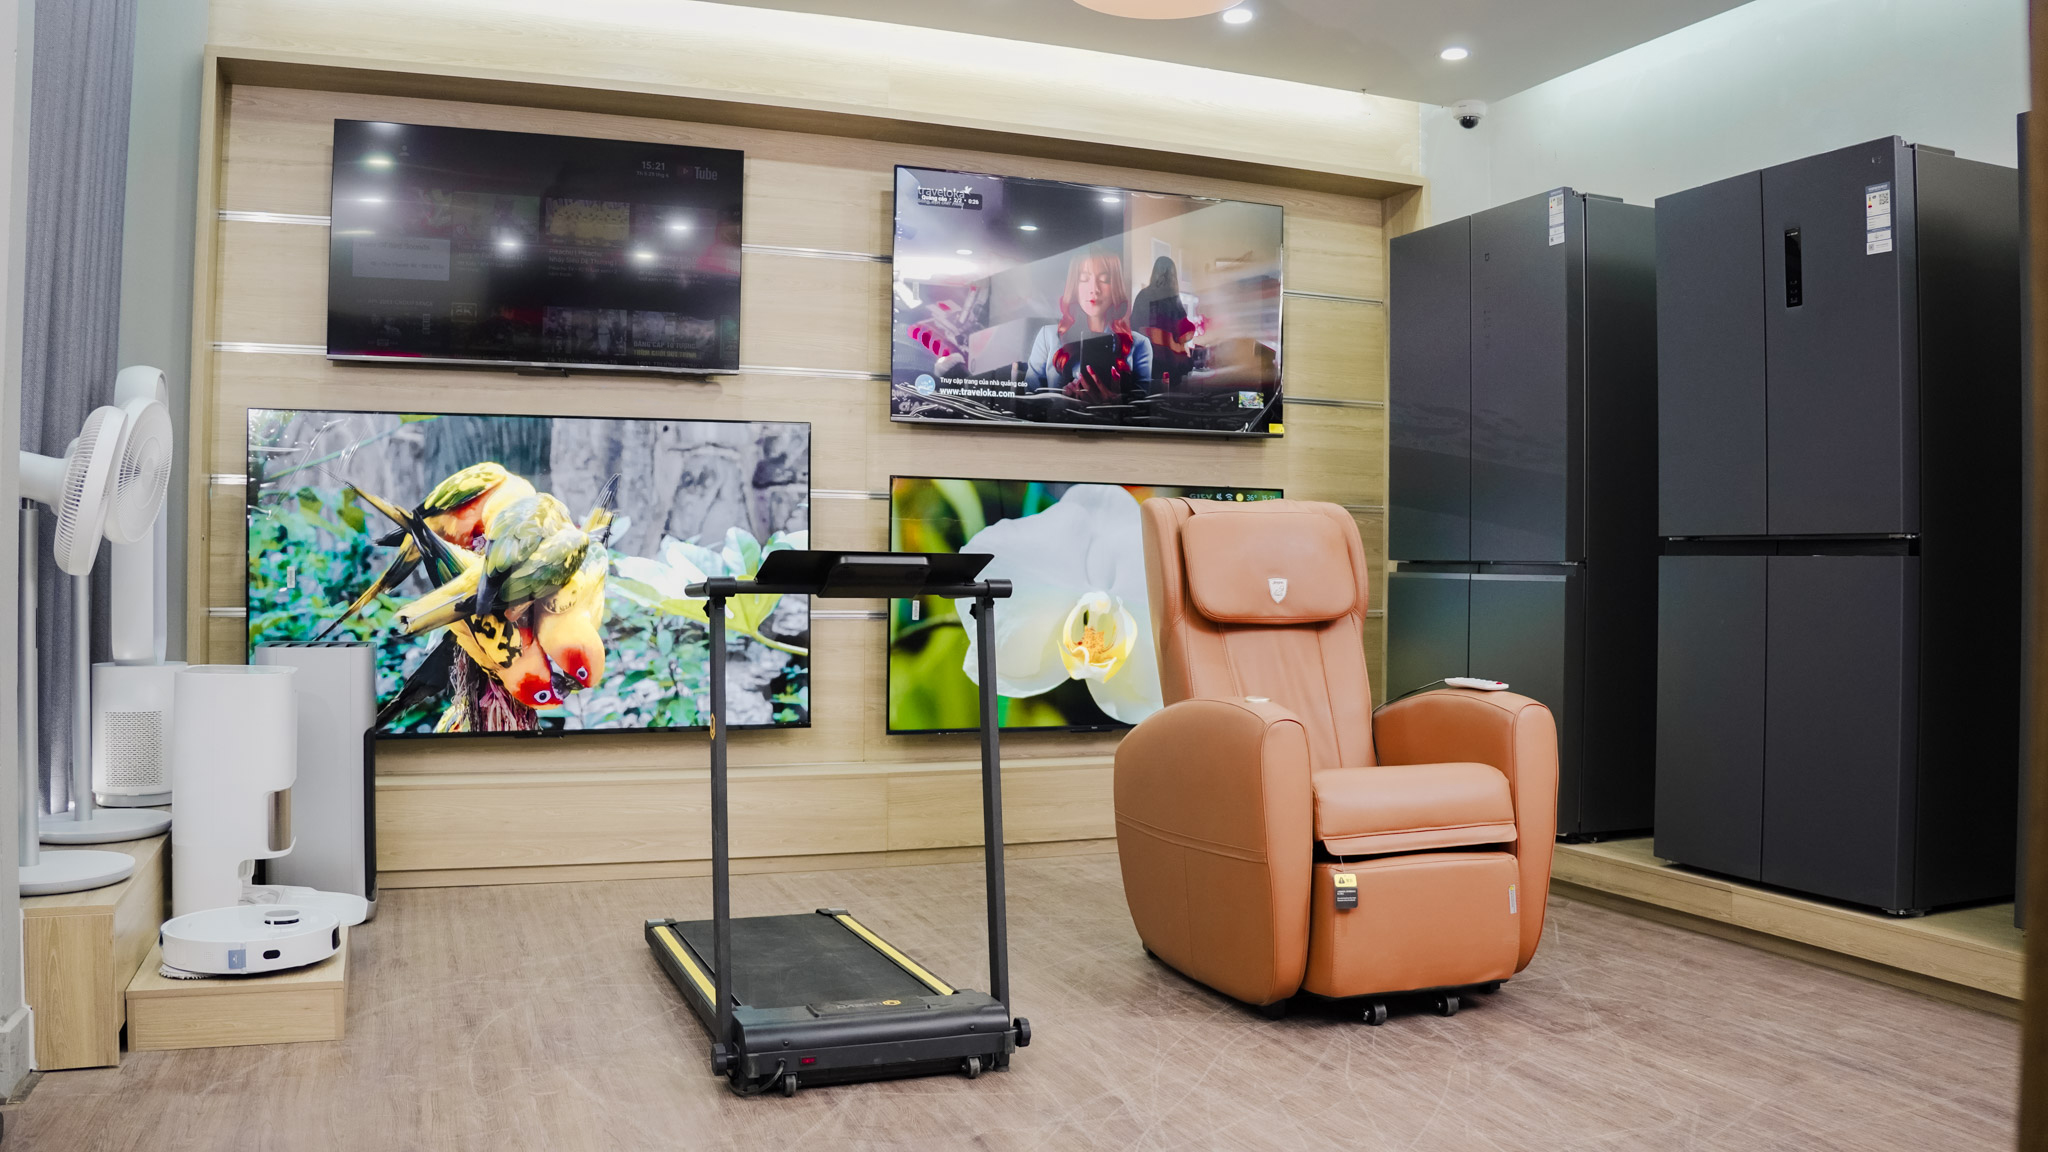 PhongHoa.vn cam kết cung cấp sản phẩm ghế sofa Xiaomi 8H chính hãng 100%, đảm bảo chất lượng cao cấp